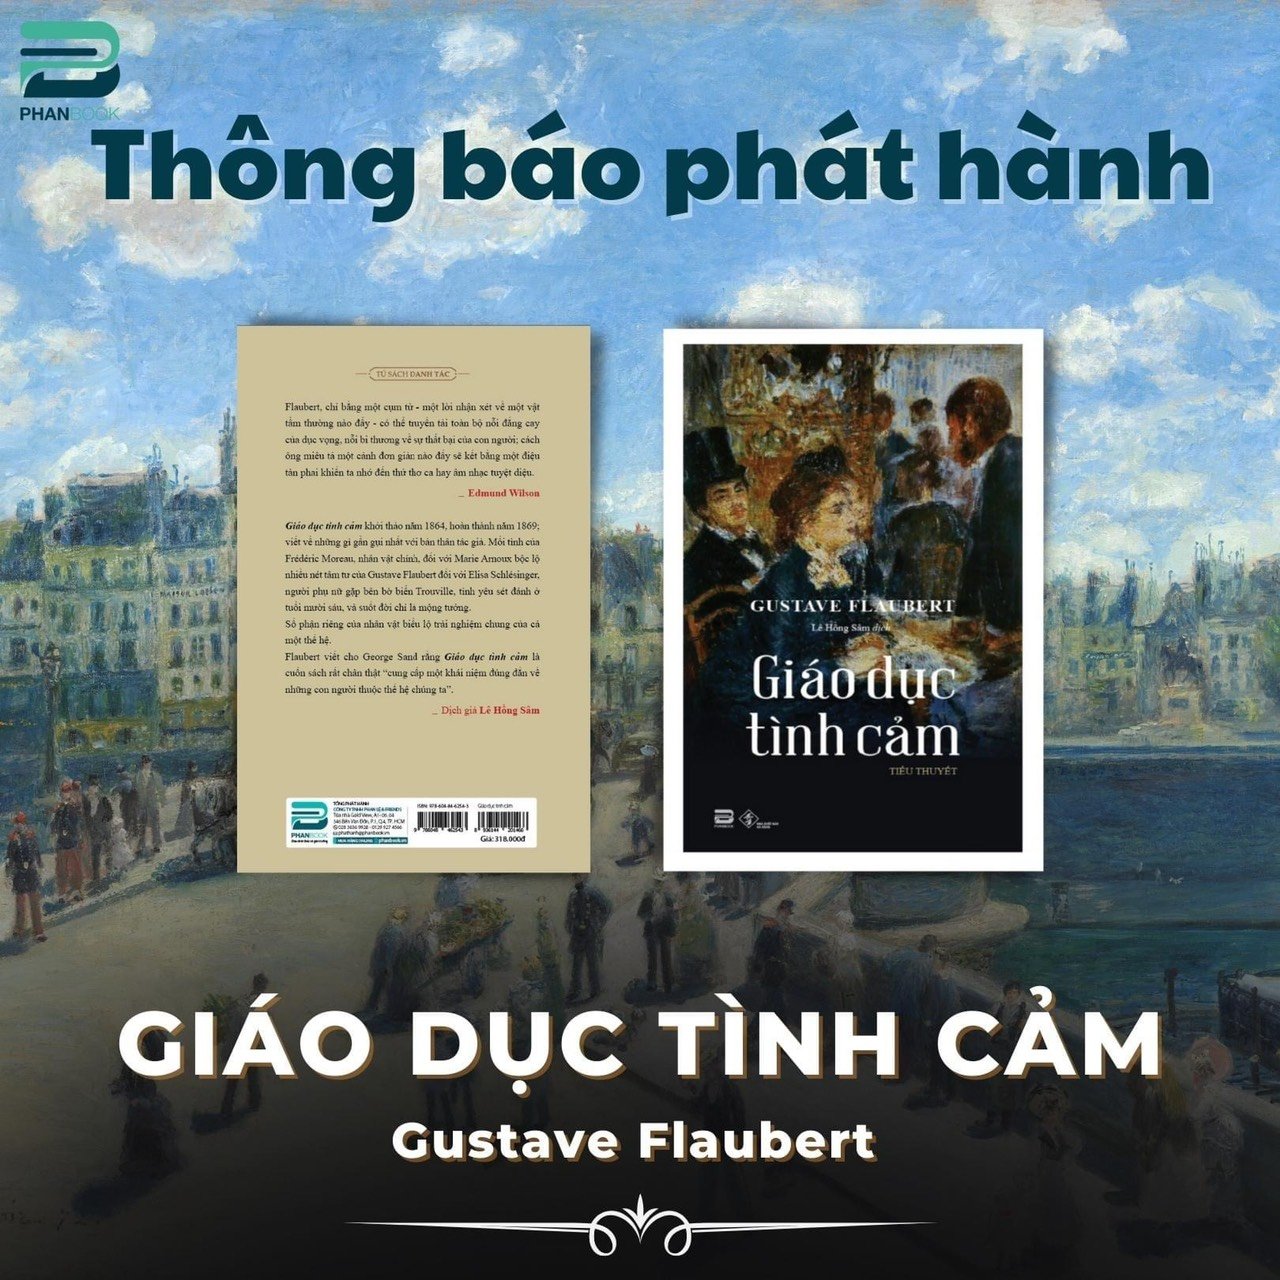 GIÁO DỤC TÌNH CẢM - Gustave Flaubert -